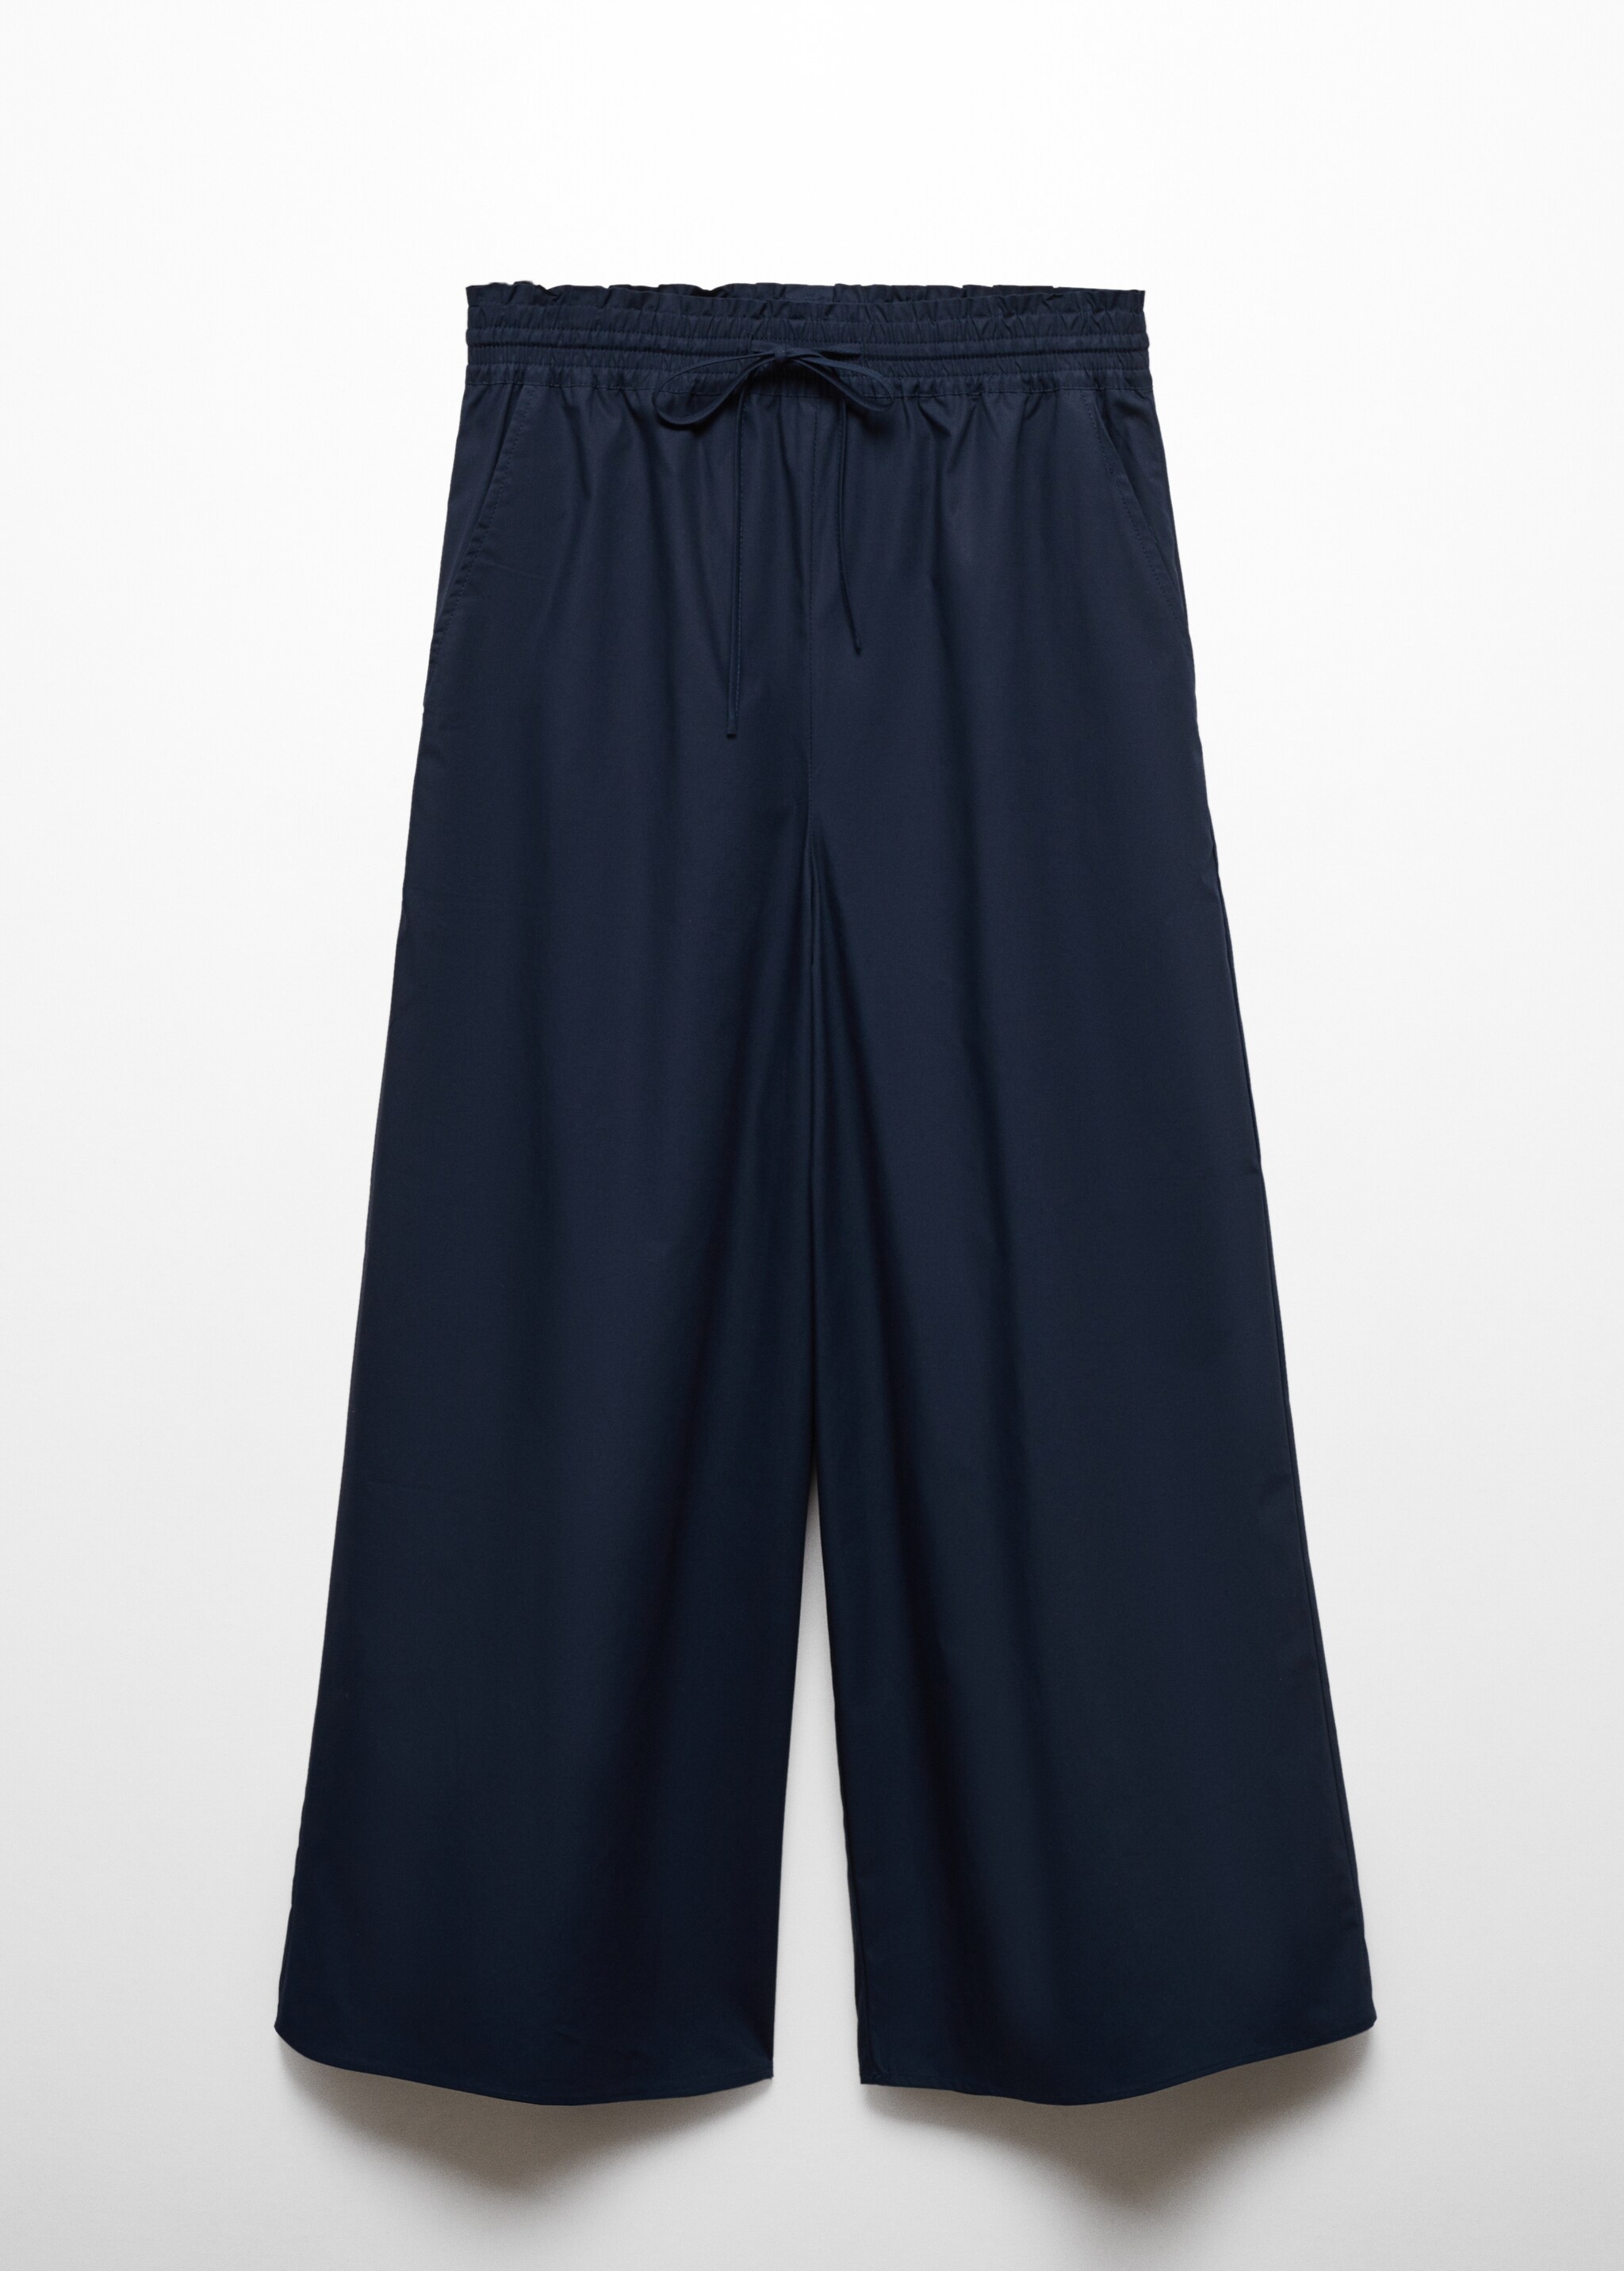 Pantalón culotte 100% algodón - Artículo sin modelo